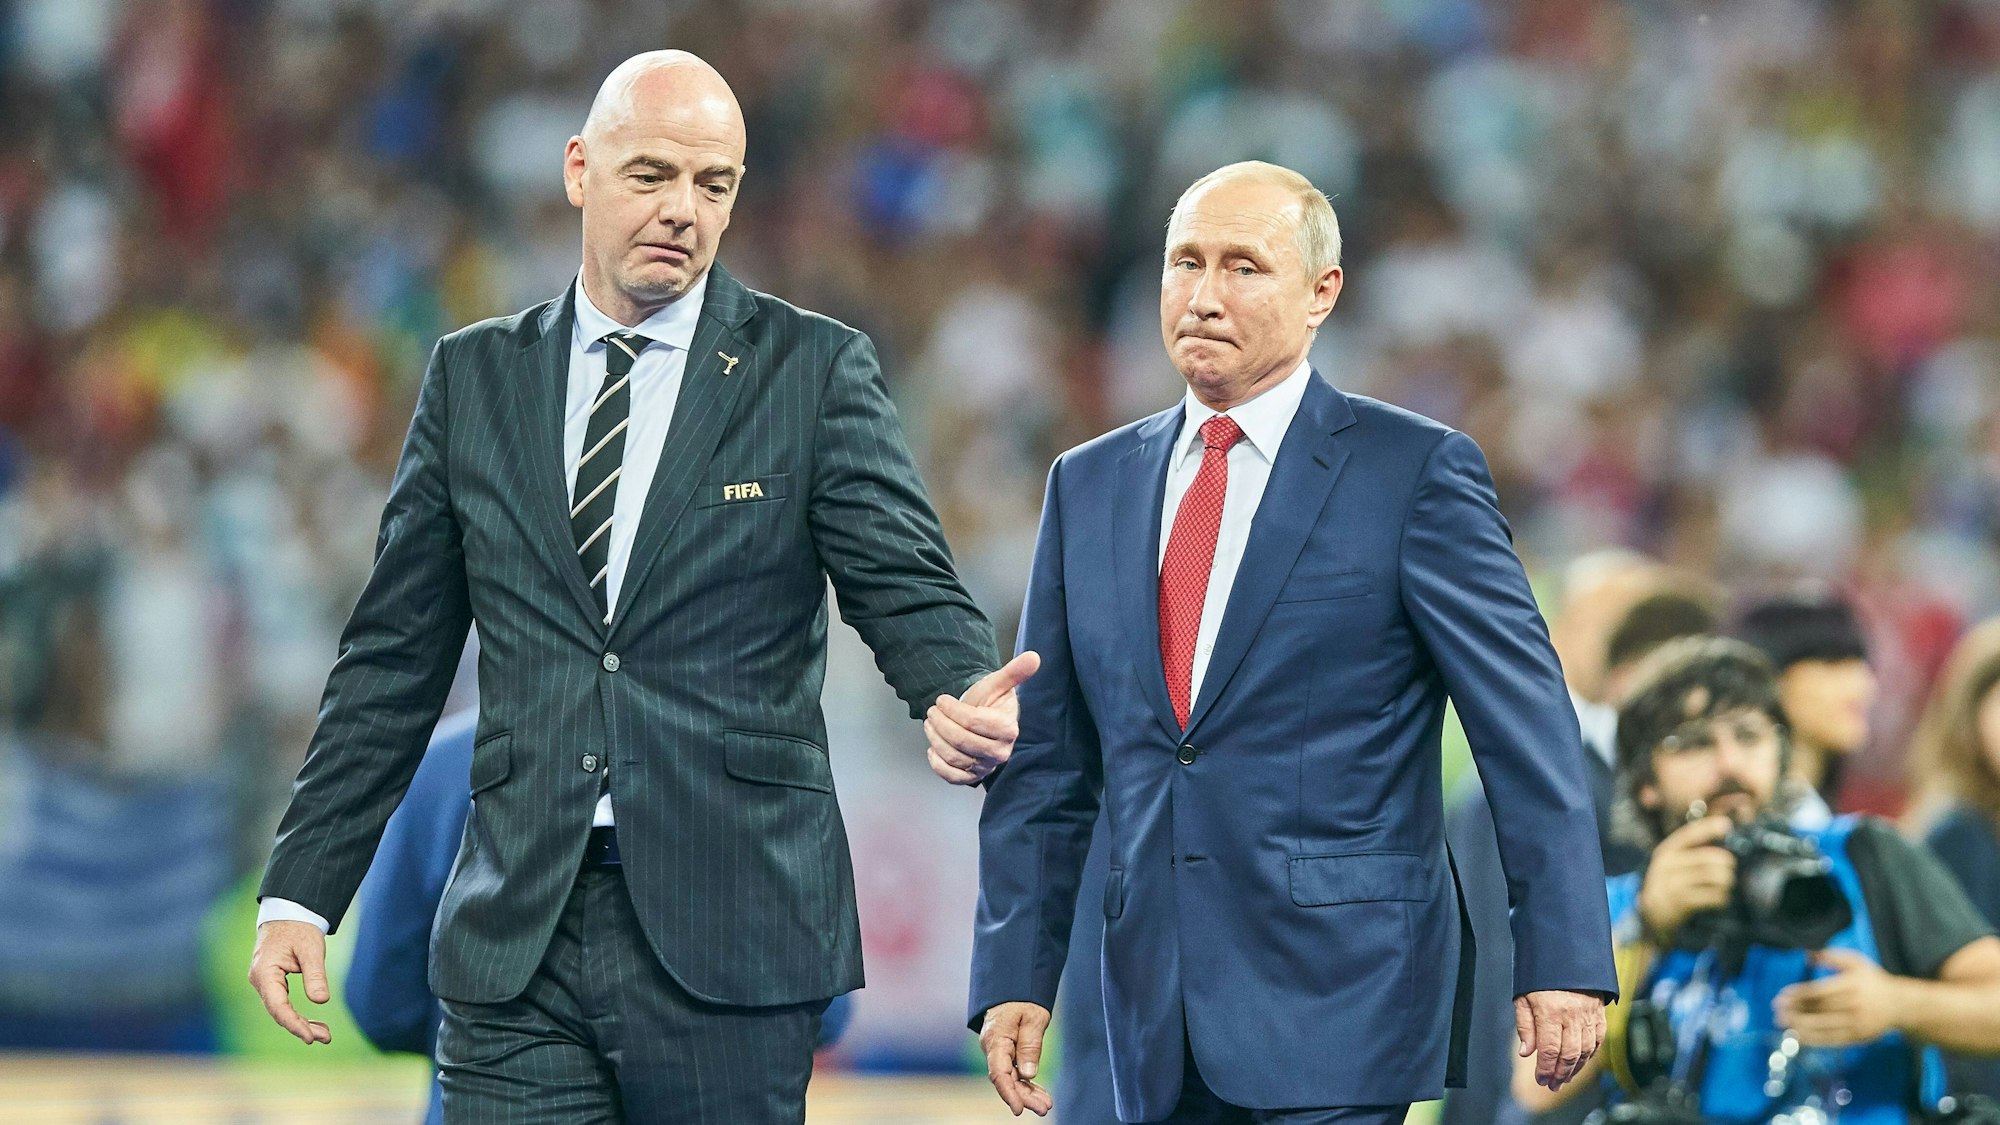 Fifa-Präsident Gianni Infantino (l.) und Wladimir Putin laufen nebeneinander auf dem Rasen des Luzhniki Stadion in Moskau nach dem Finale der Fußball-Weltmeisterschaft 2018 in Russland. Infantino und Putin tragen Anzüge und bereiten sich auf die Siegerehrung vor.